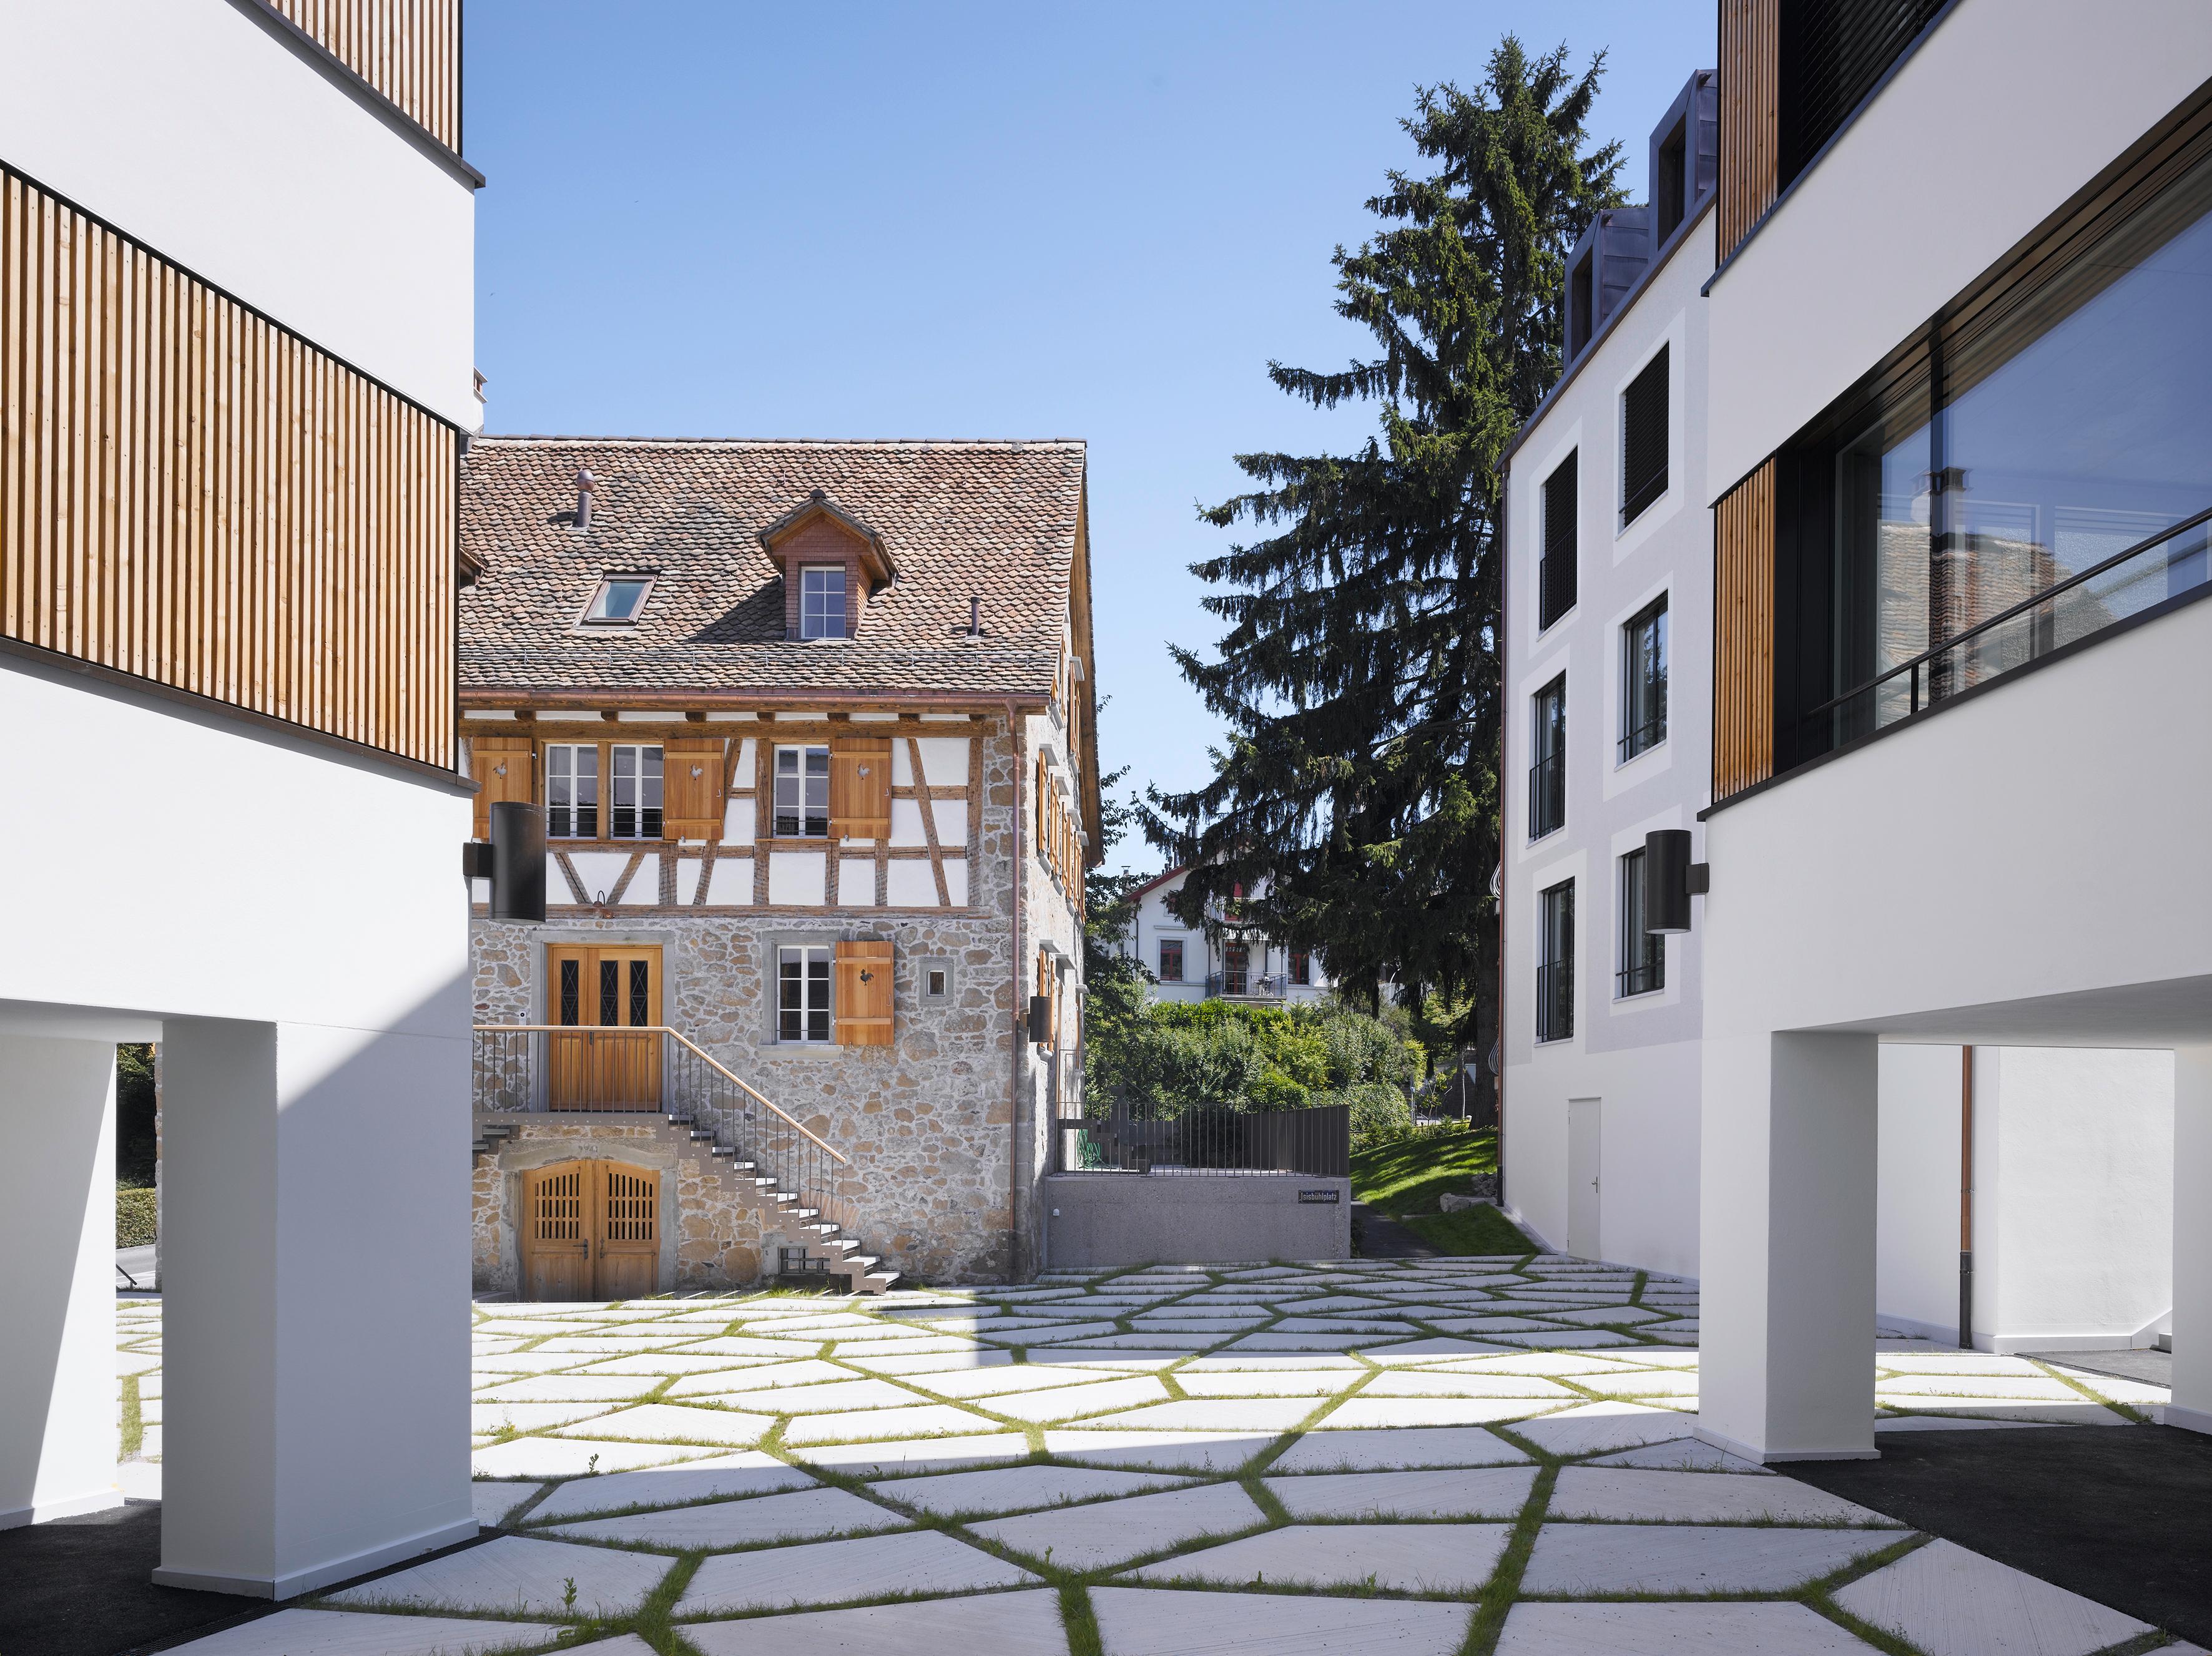    Architektur-Reportage Thalwil Areal: der Aussenbereich ist mit modernen Steinplatten gestaltet